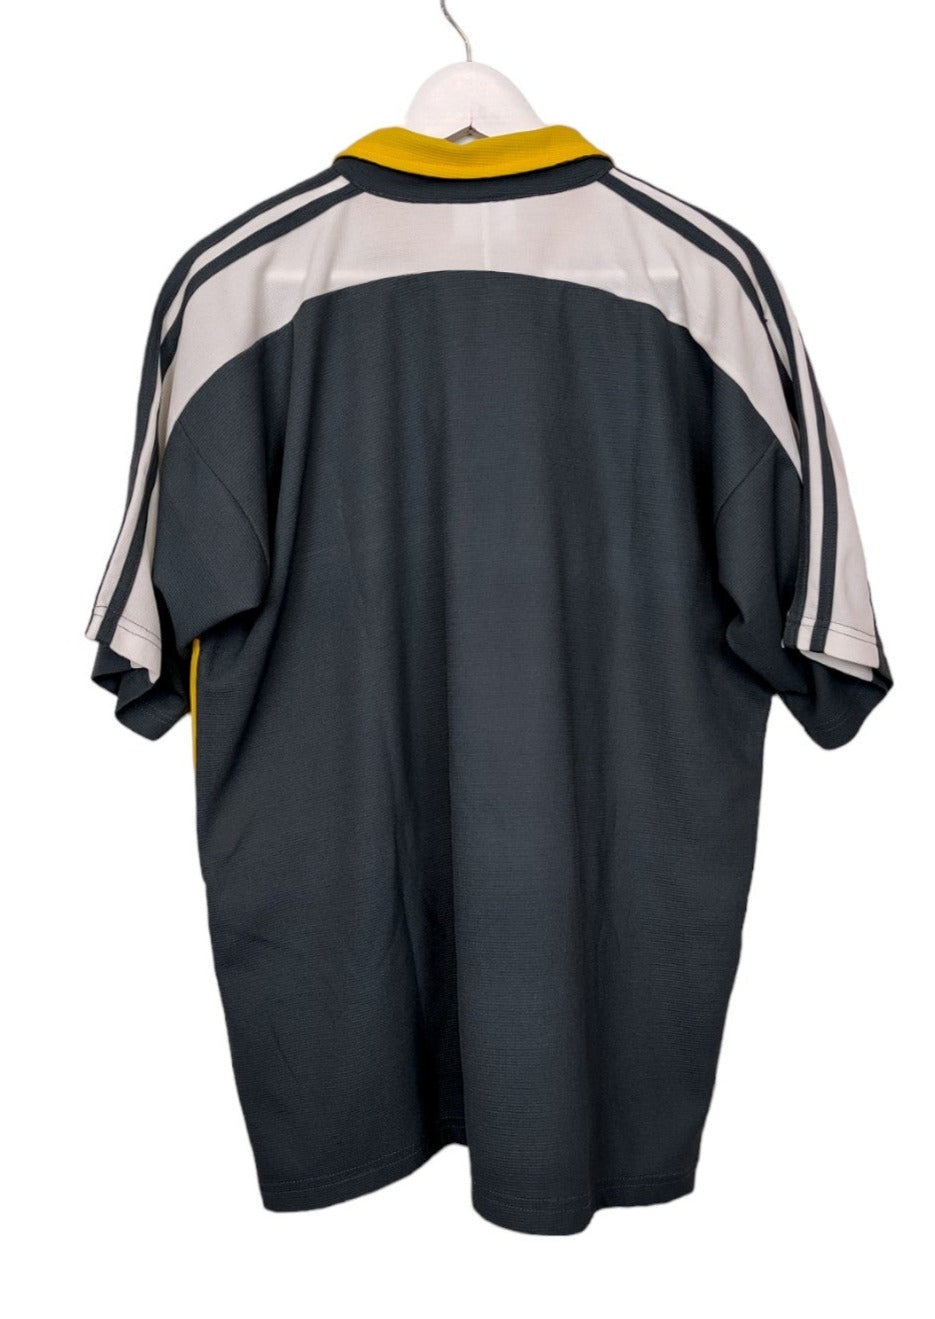 Αθλητική Κοντομάνικη Μπλούζα - T-Shirt ADIDAS σε Γκρι - Κίτρινο χρώμα (Large)